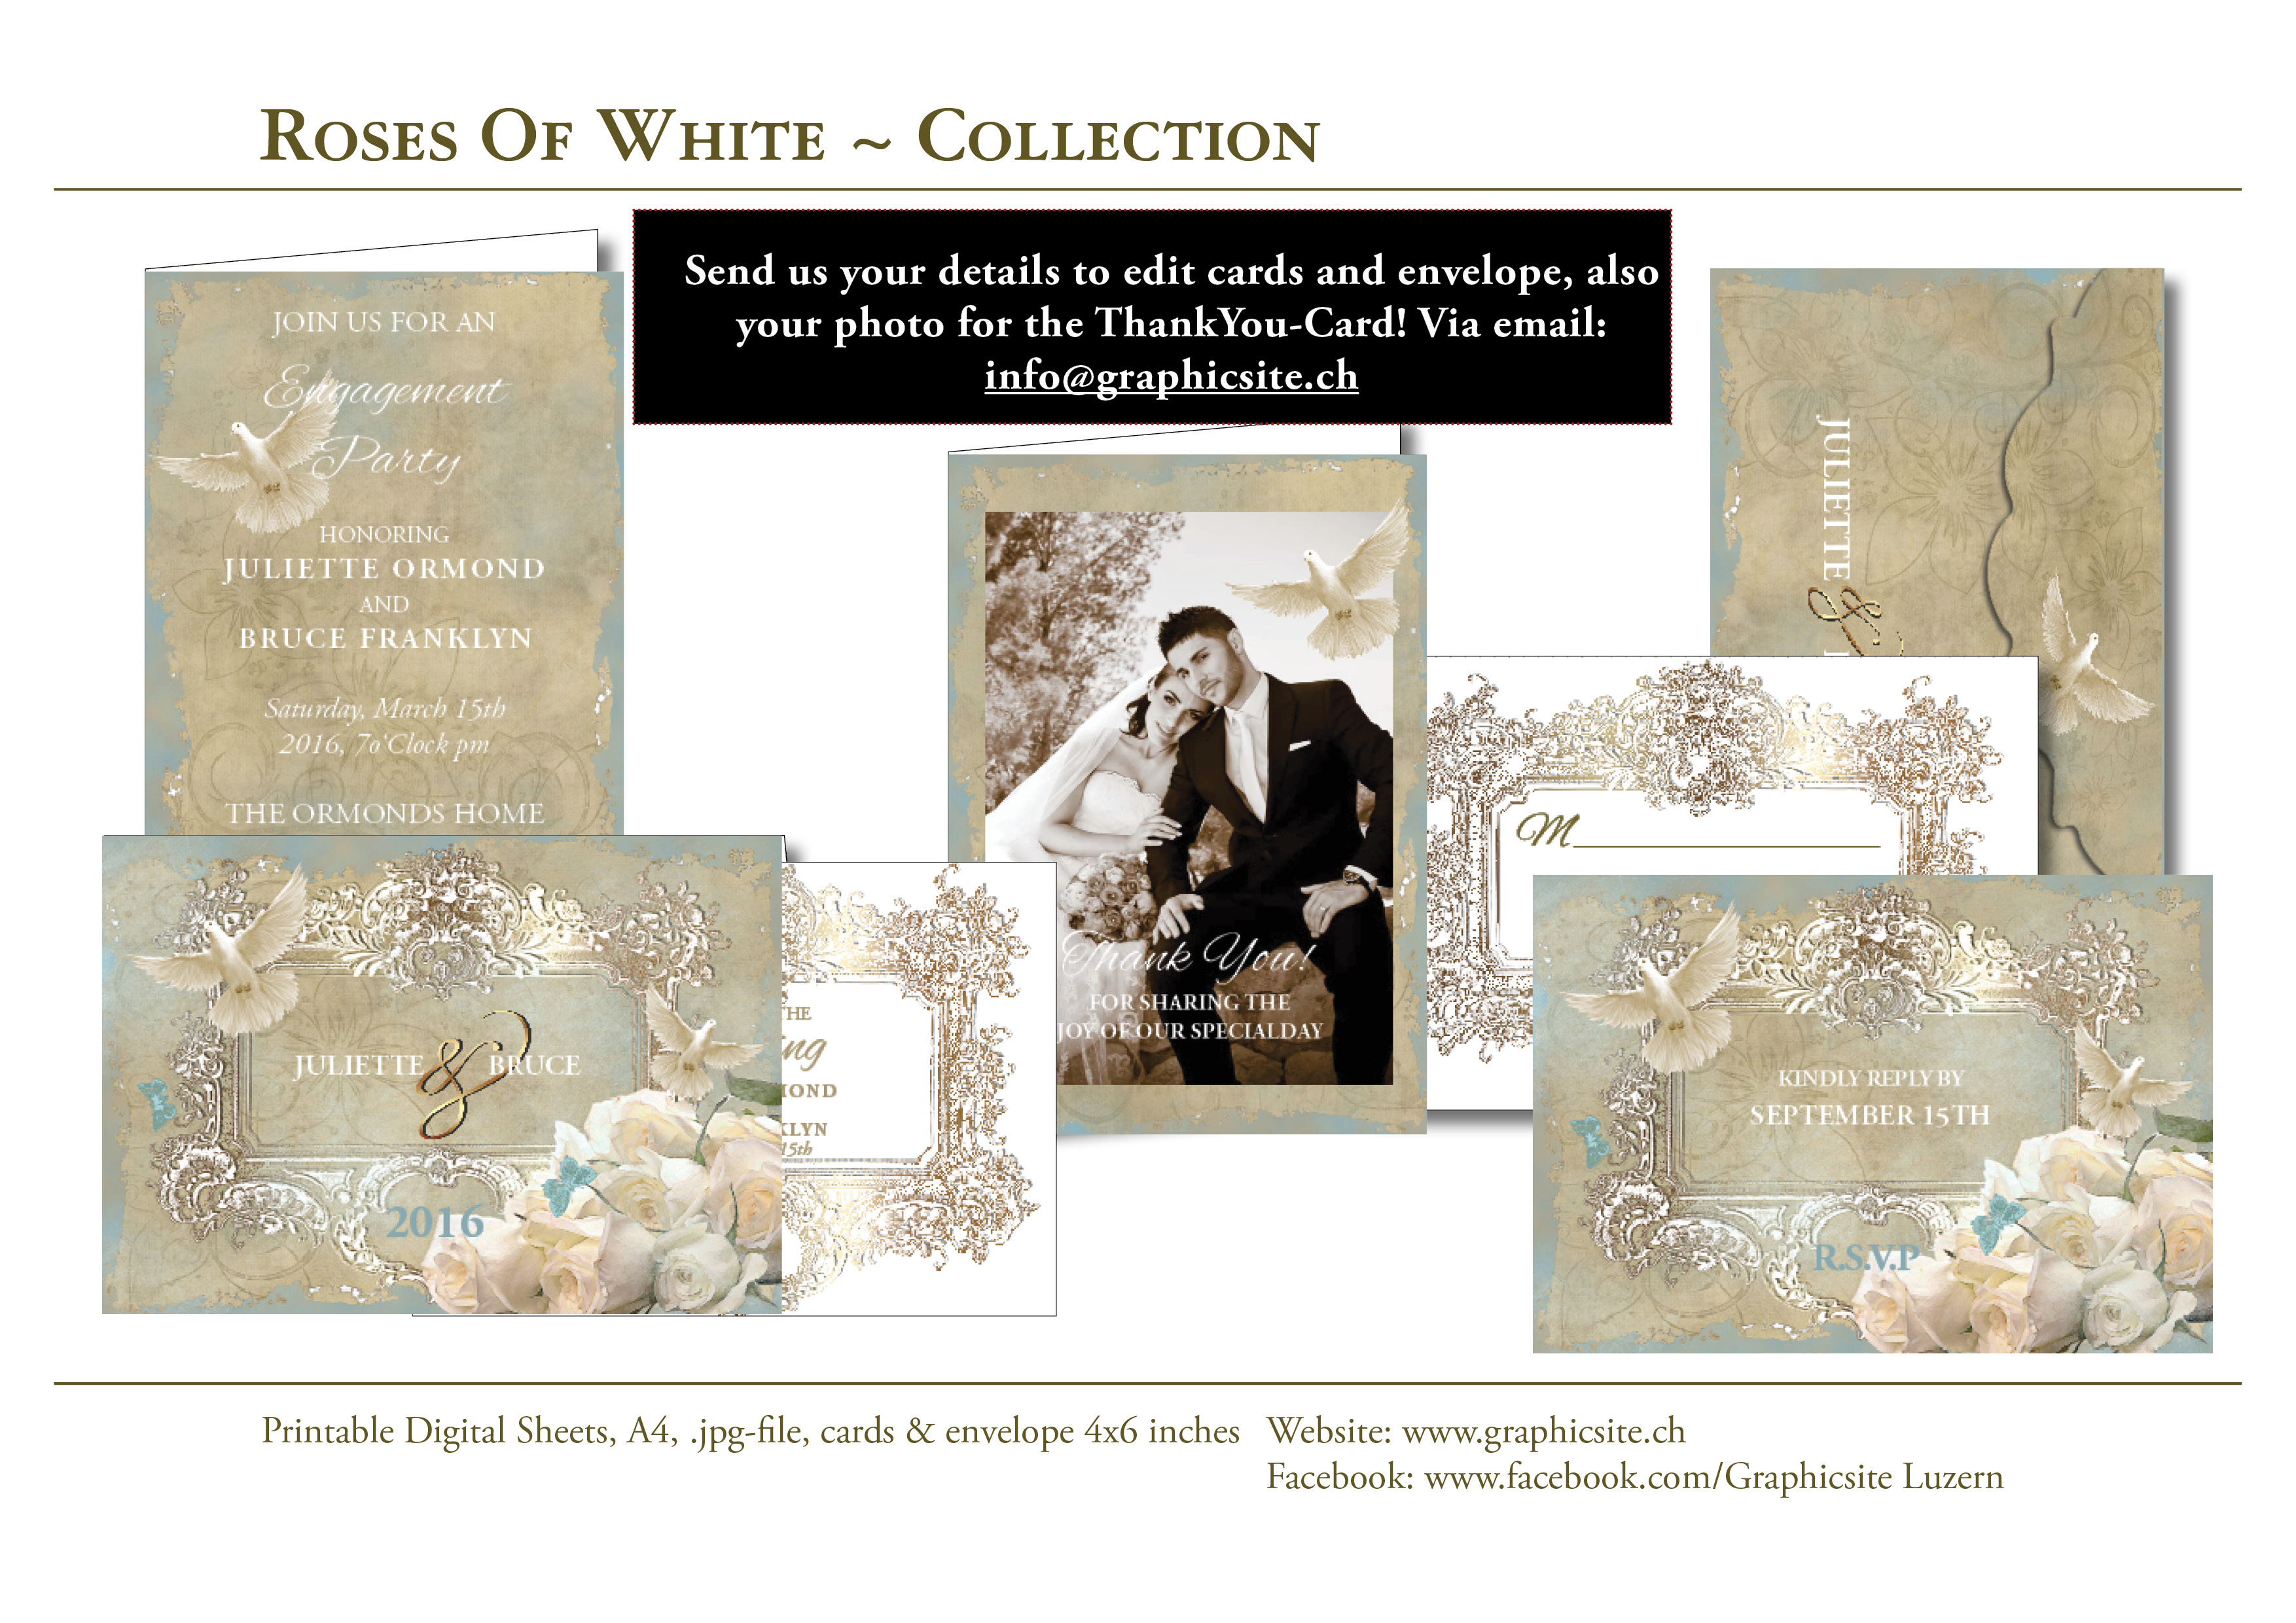 RosesOfWhite - Hochzeitskarten, Einladungen, Ankuendigung, selber drucken, Luzern, Schweiz